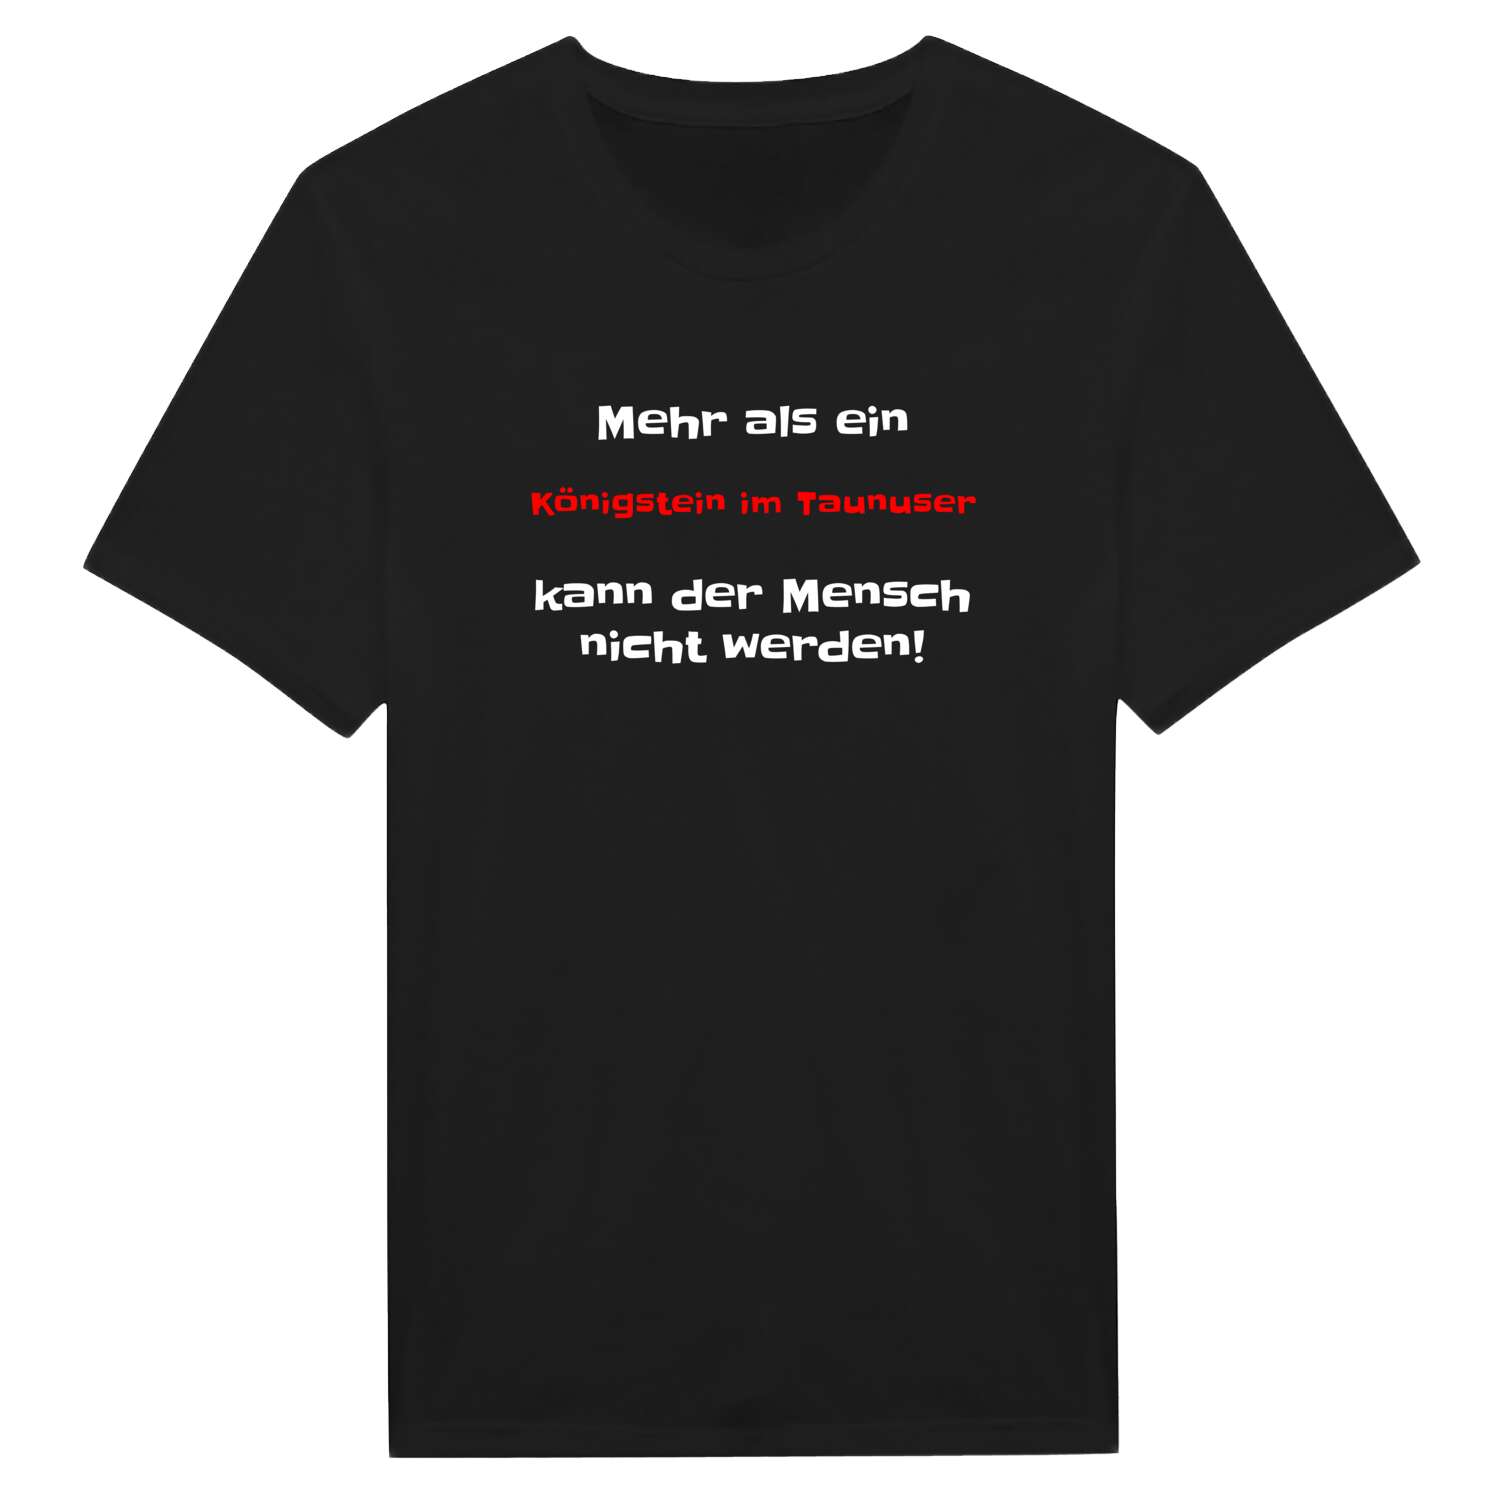 Königstein im Taunus T-Shirt »Mehr als ein«